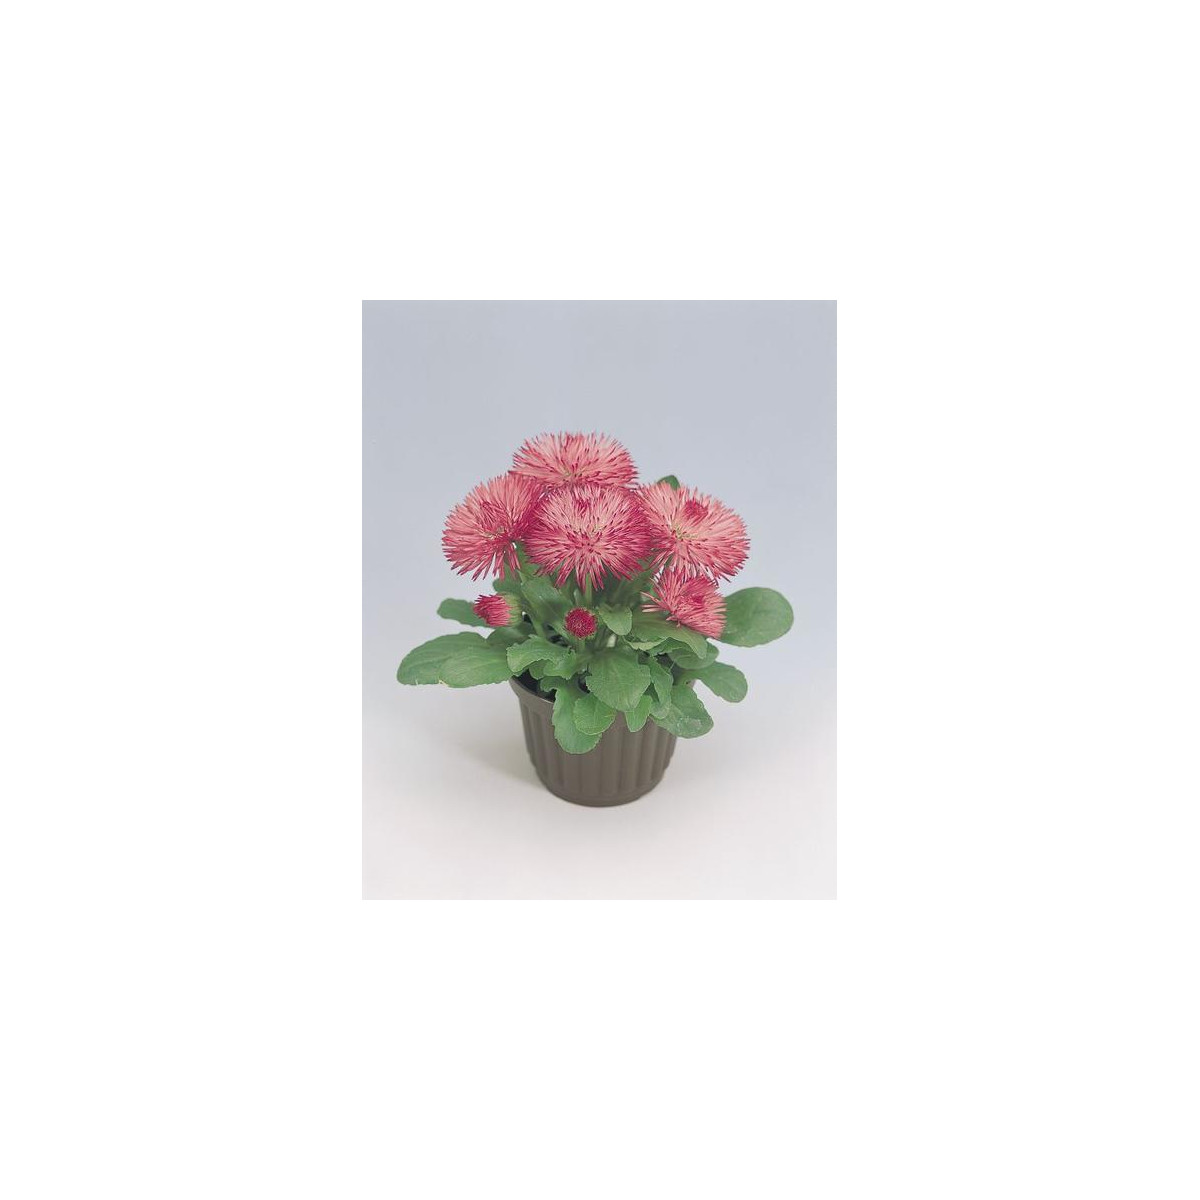 Sedmikráska Roggli růžová - Bellis perennis - semena sedmikrásky - 50 ks